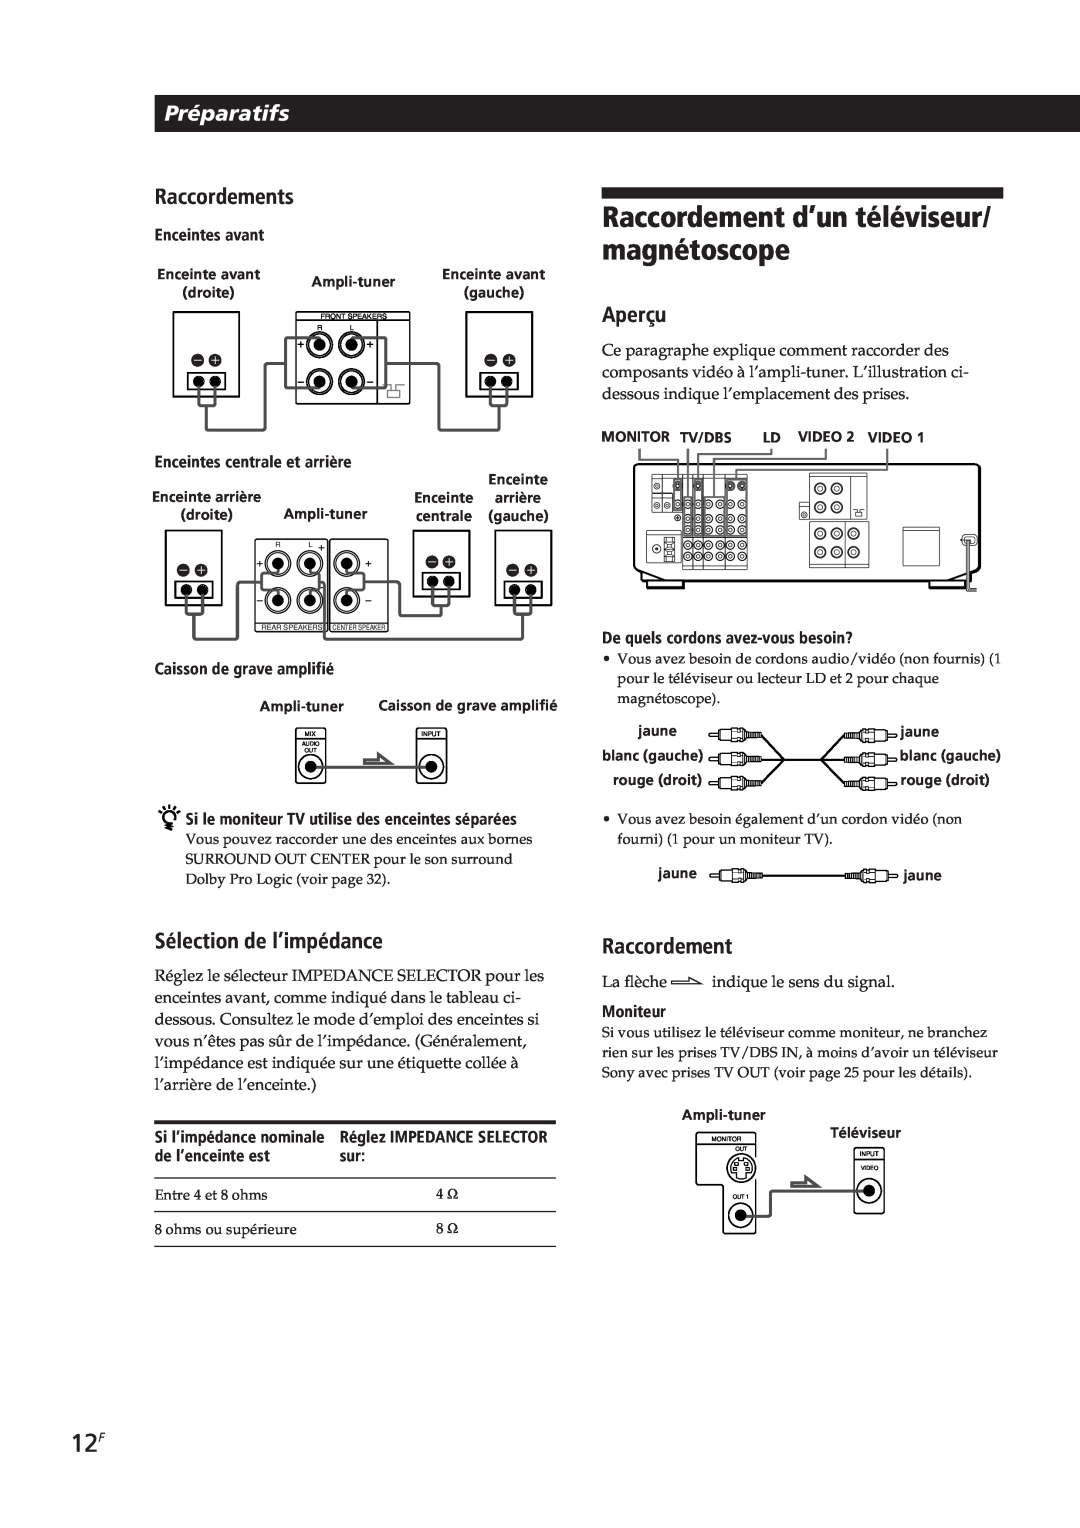 Sony STR-DE905G, STR-DE805G manual Raccordement d’un téléviseur/ magnétoscope, Préparatifs, Raccordements, Aperçu, Moniteur 